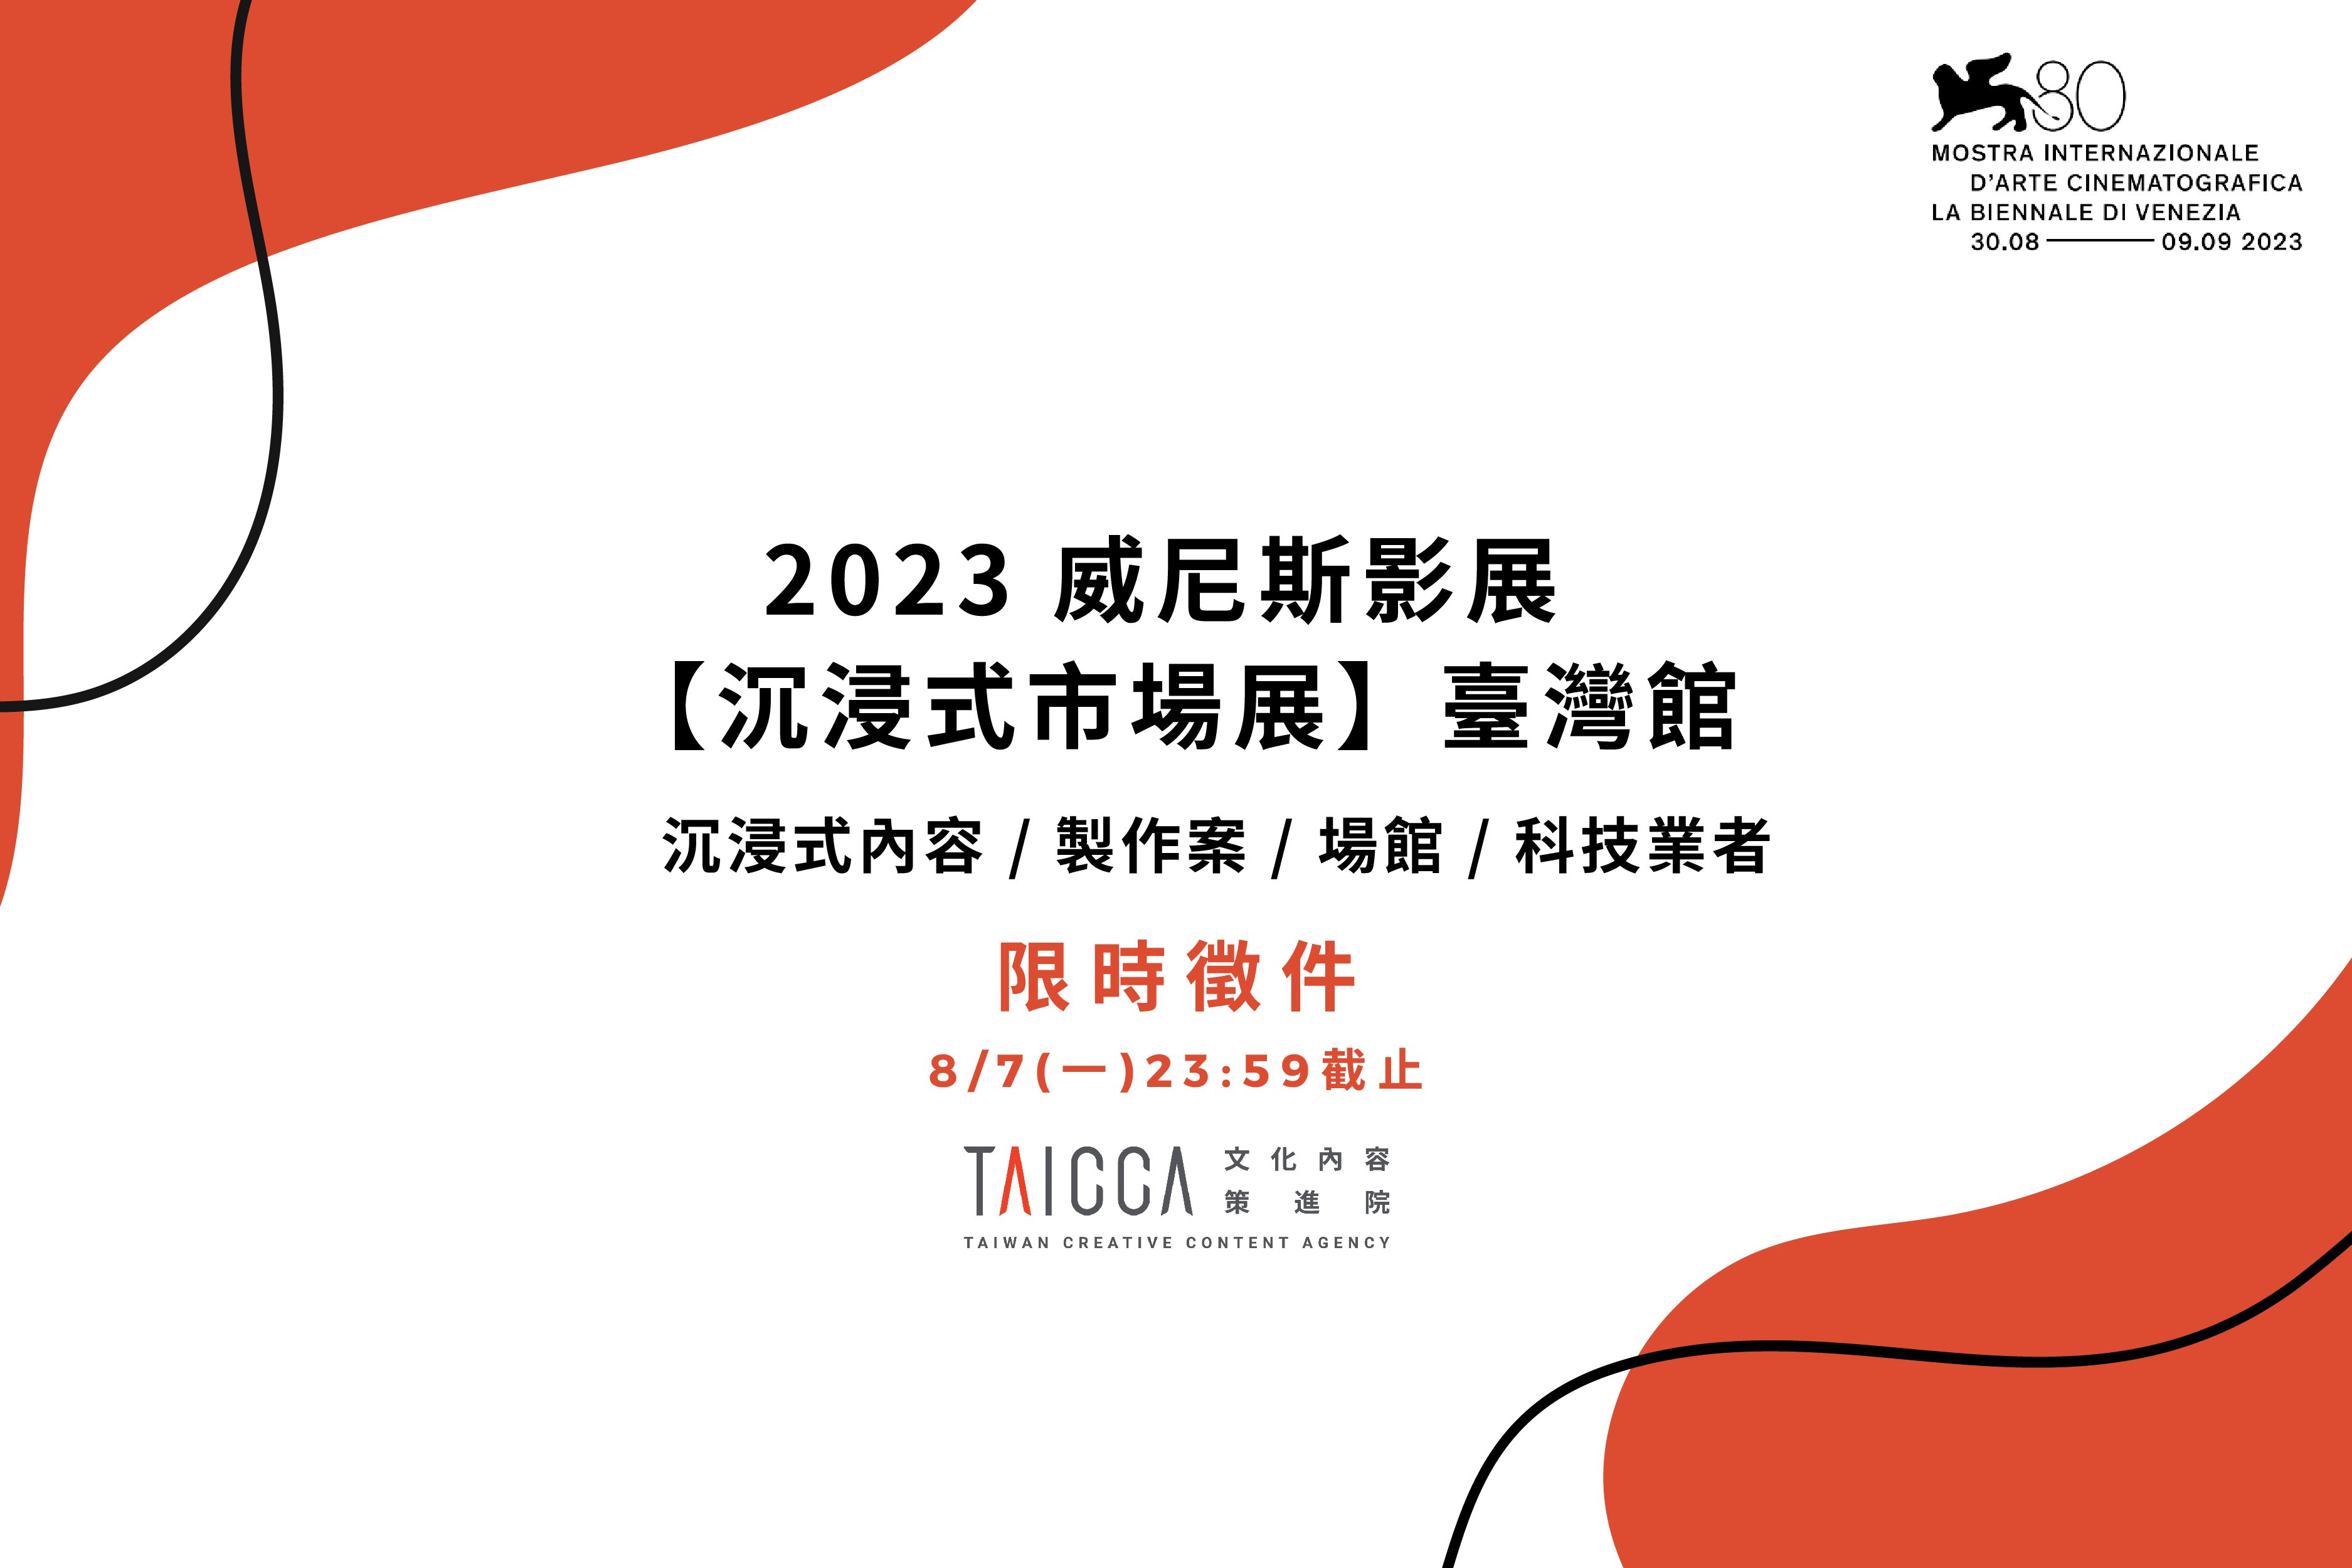 2023 年威尼斯影展「沉浸式市場展」臺灣館徵件資訊